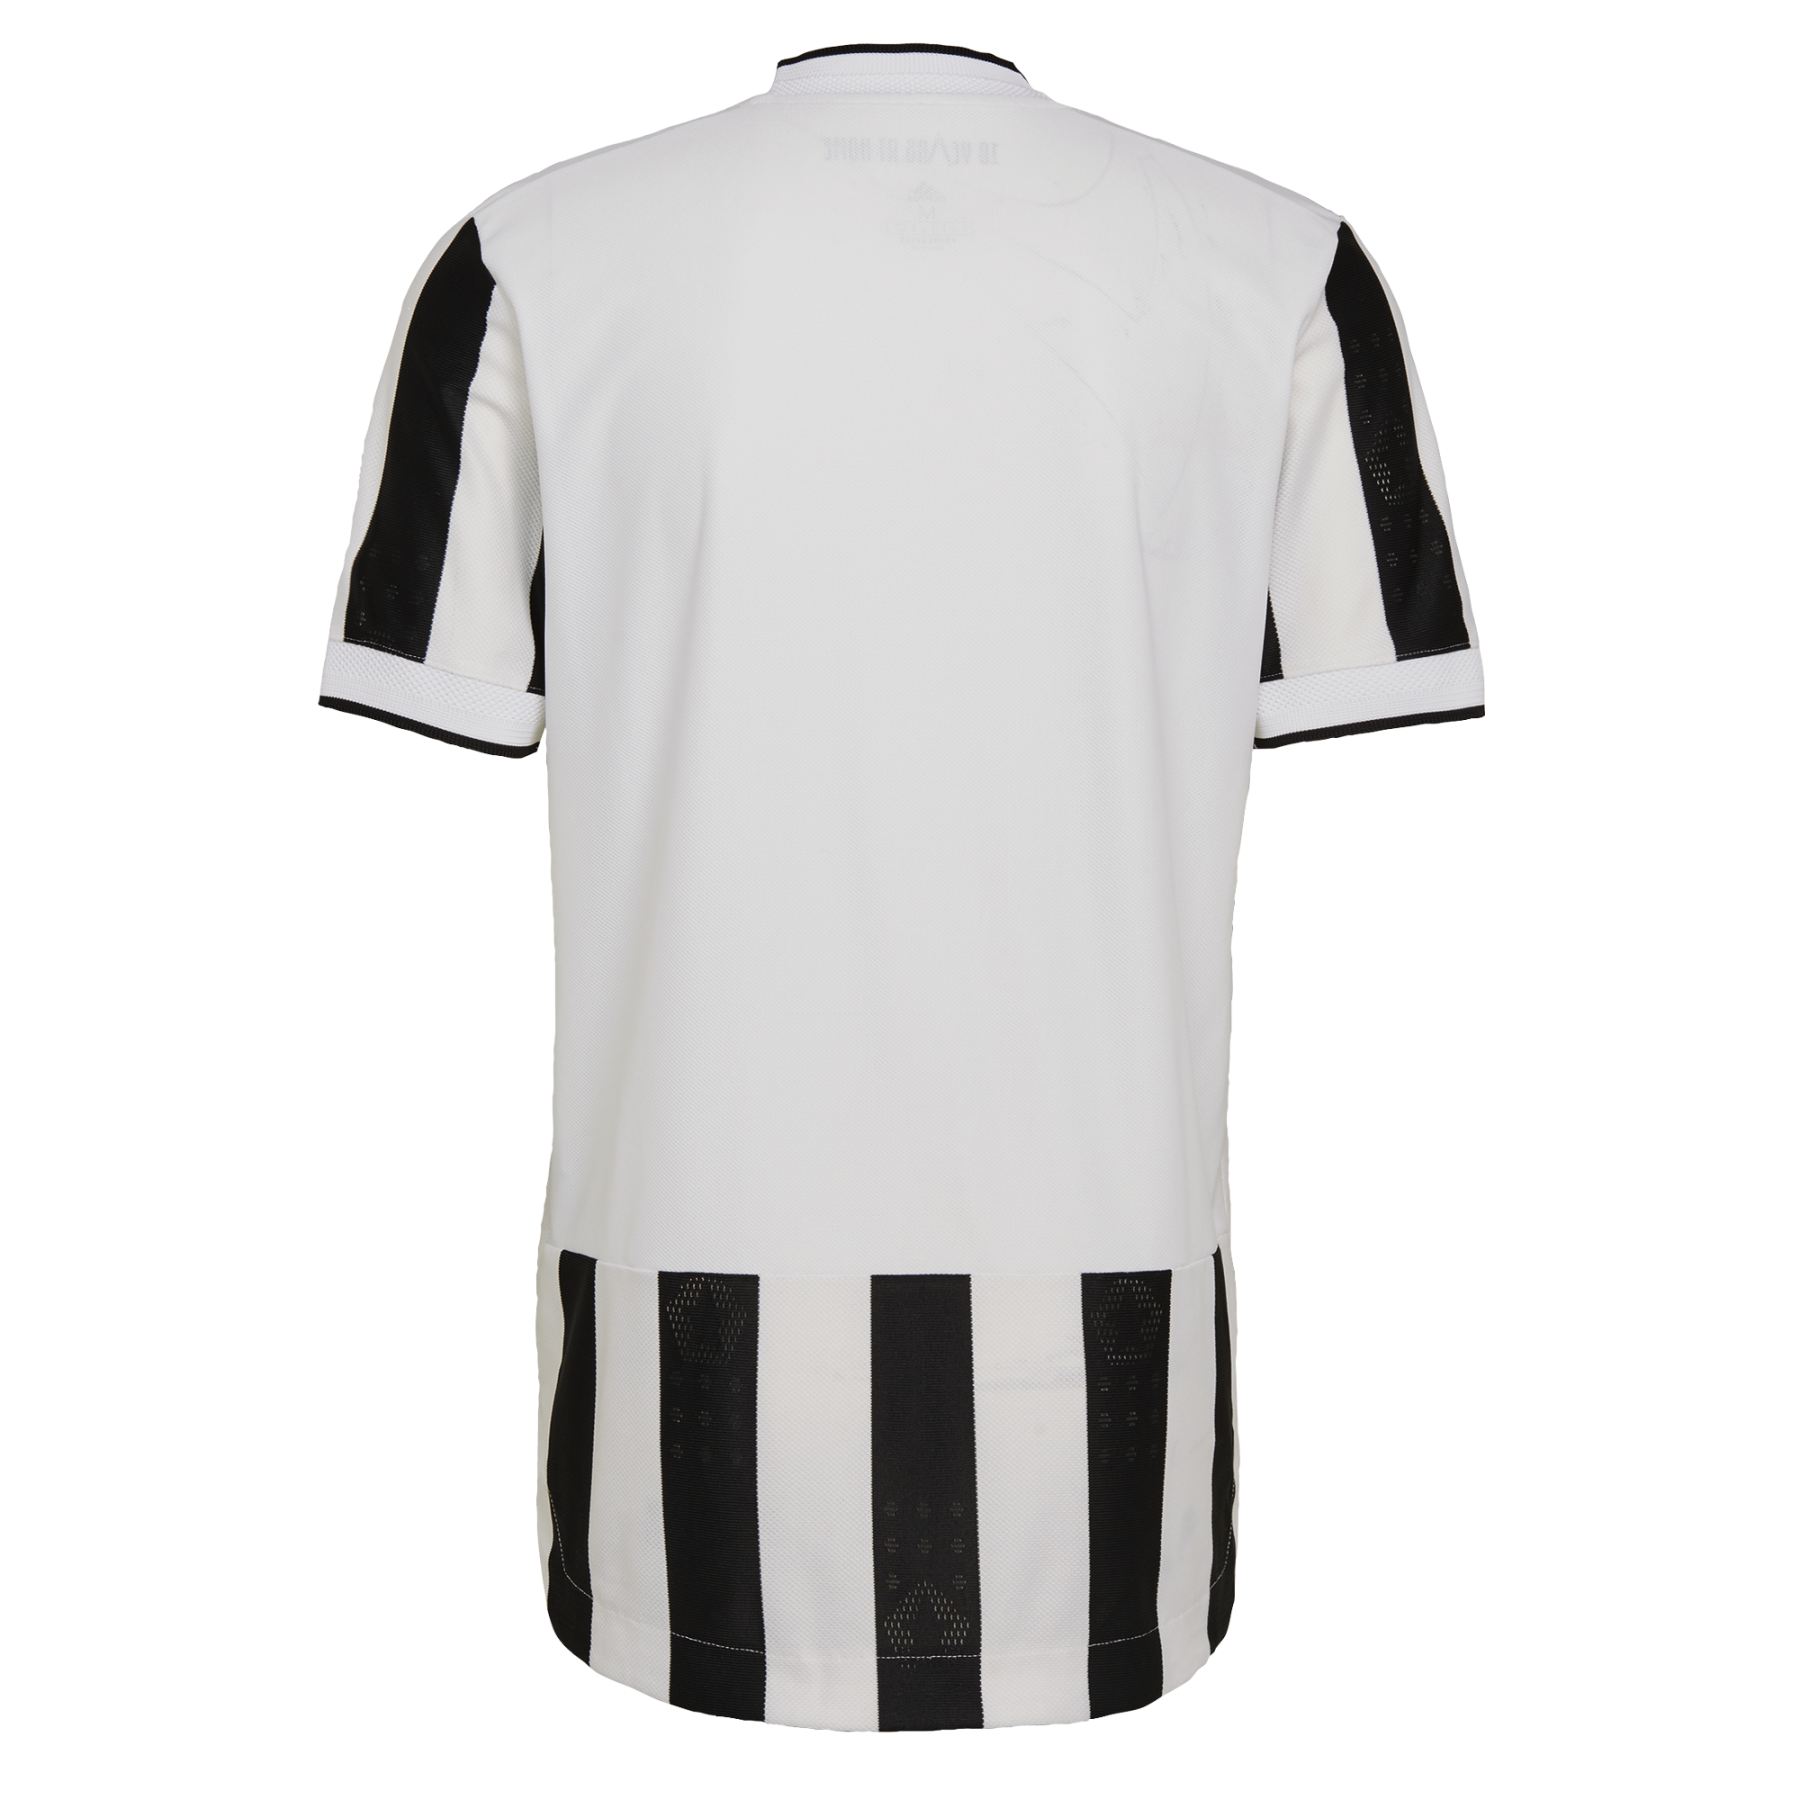 Home jersey Juventus 2021/22